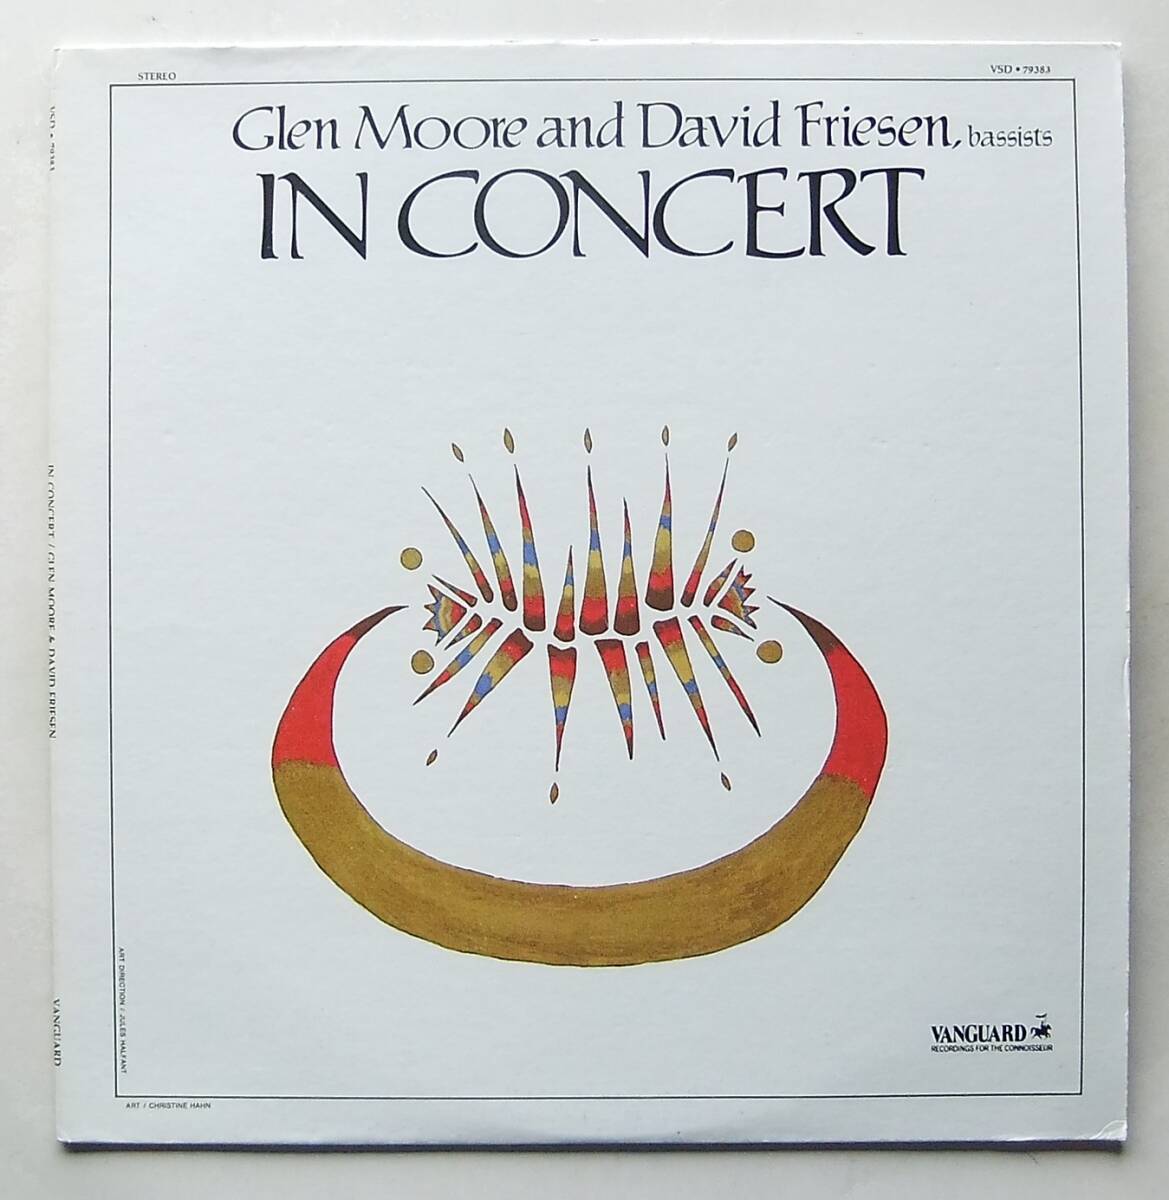 ◆ GLEN MOORE and DAVID FRIESEN / In Concert ◆ Vanguard VSD-79383 (promo) ◆ W_画像1